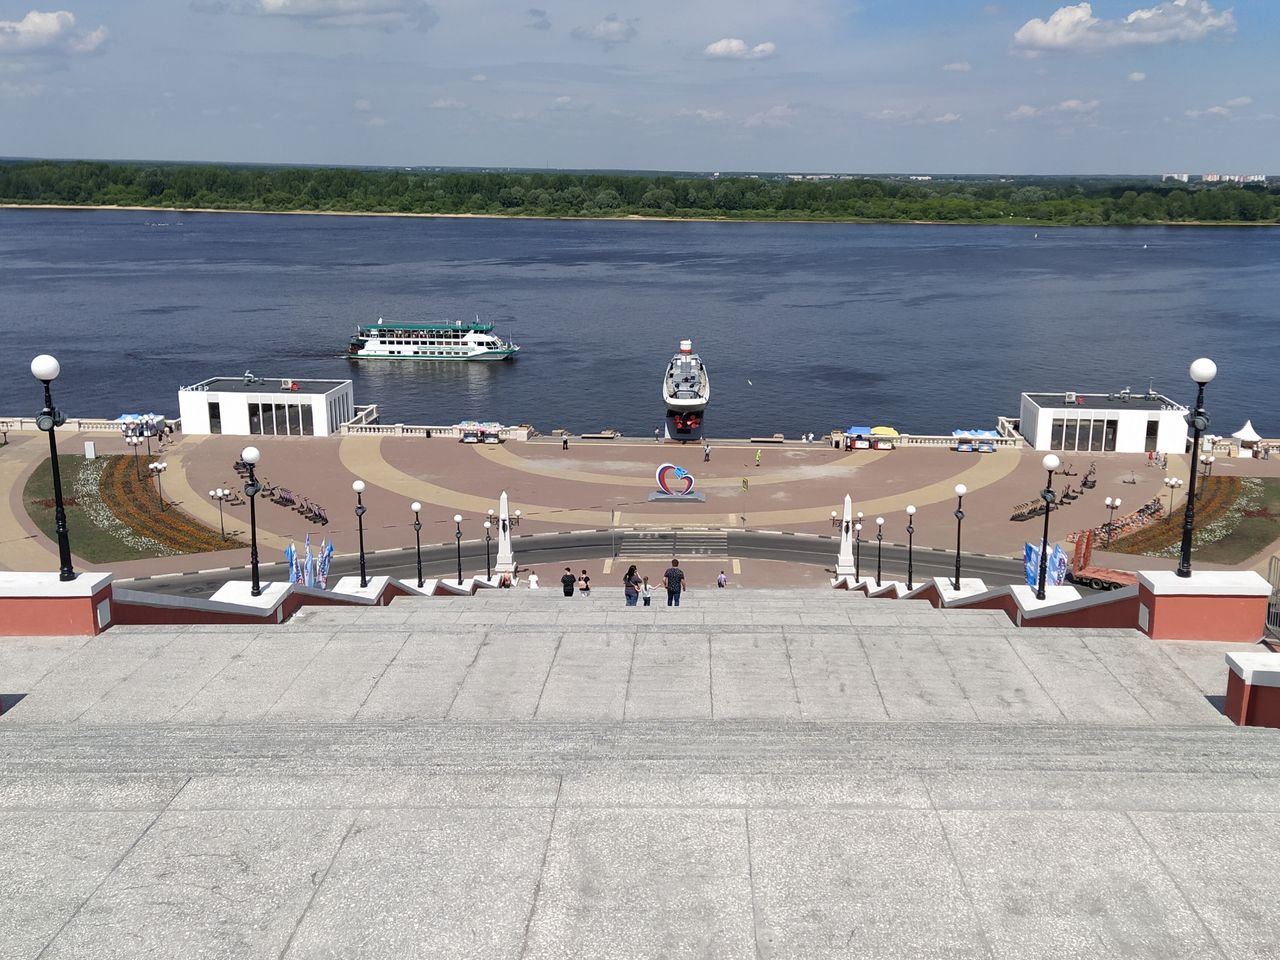 Пеший Нижний Новгород | Цена 6250₽, отзывы, описание экскурсии